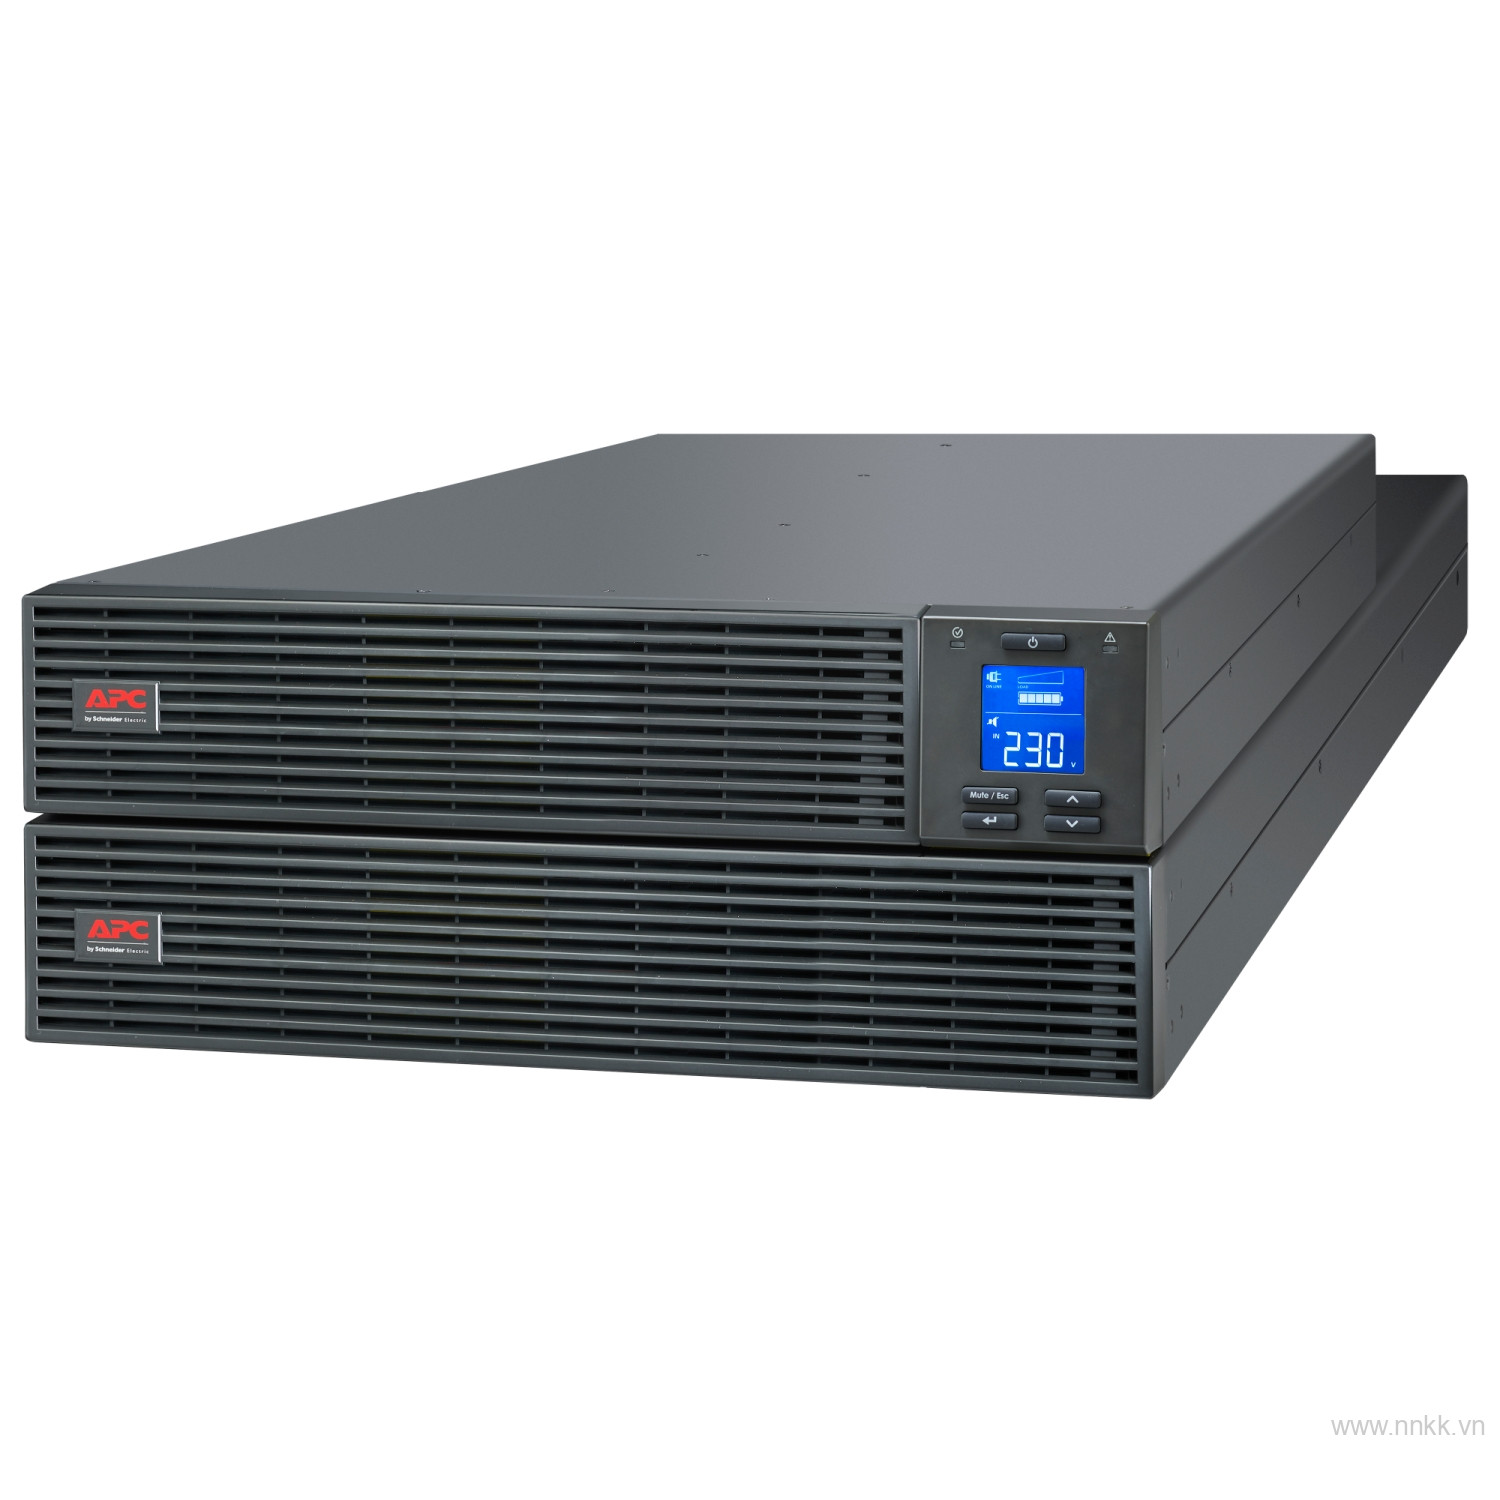 Bộ lưu điện APC SRV10KRI, APC Easy UPS SRV RM 10000VA 230V (bao gồm SRVPM10KRI và SRV192RBP-9A)